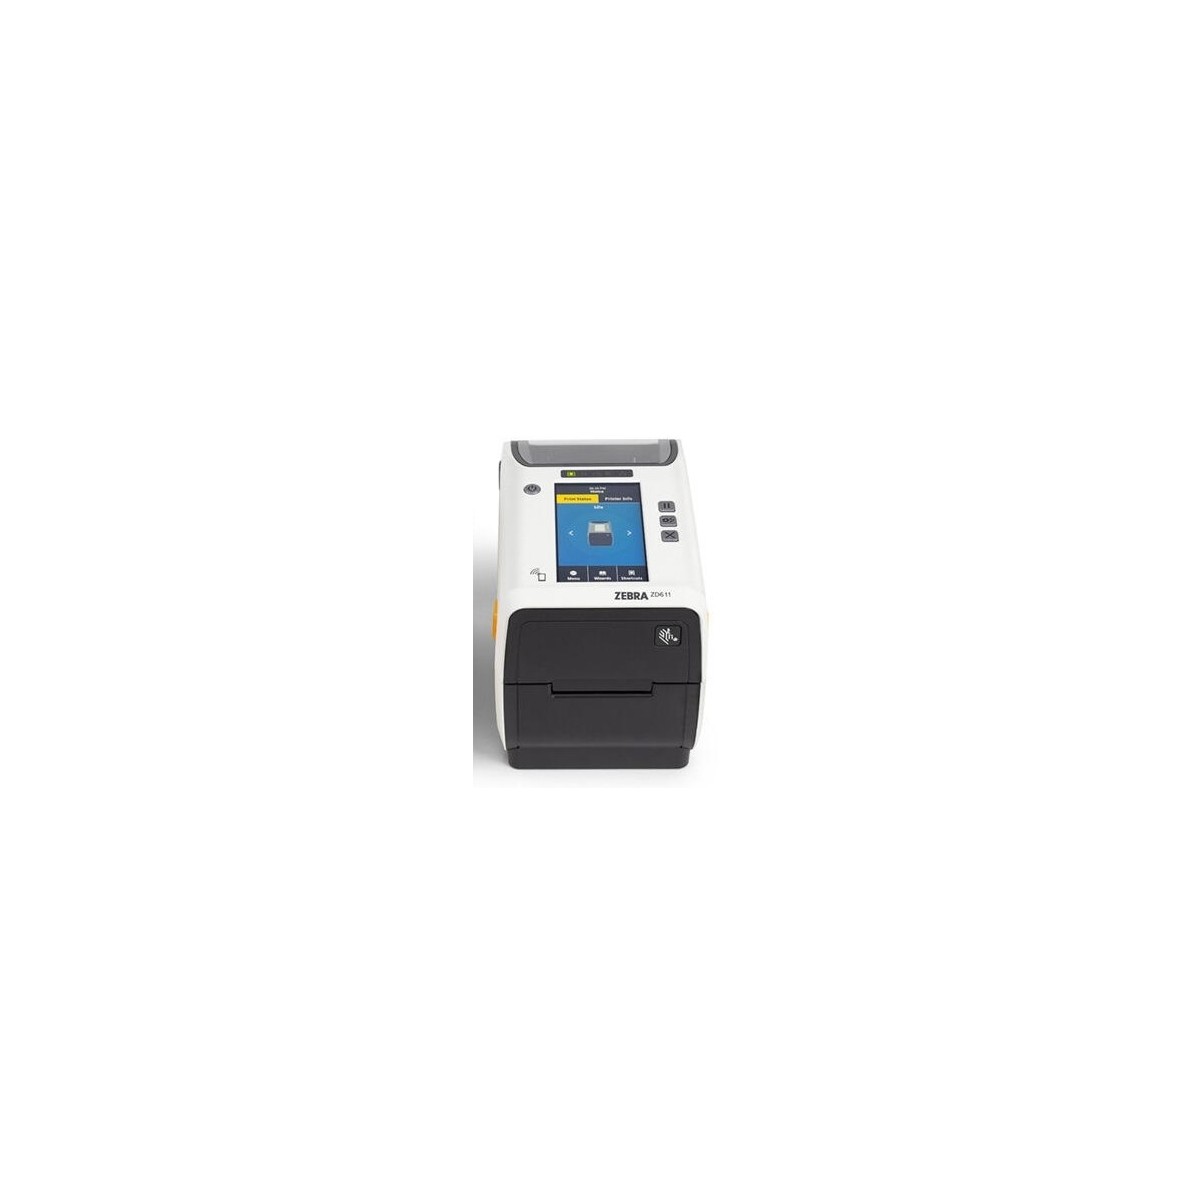 Zebra Thermal Transfer Printer 74M ZD611 Healthcare Color Touch LCD_ 300 dpi USB USB - Label Printer - Printer